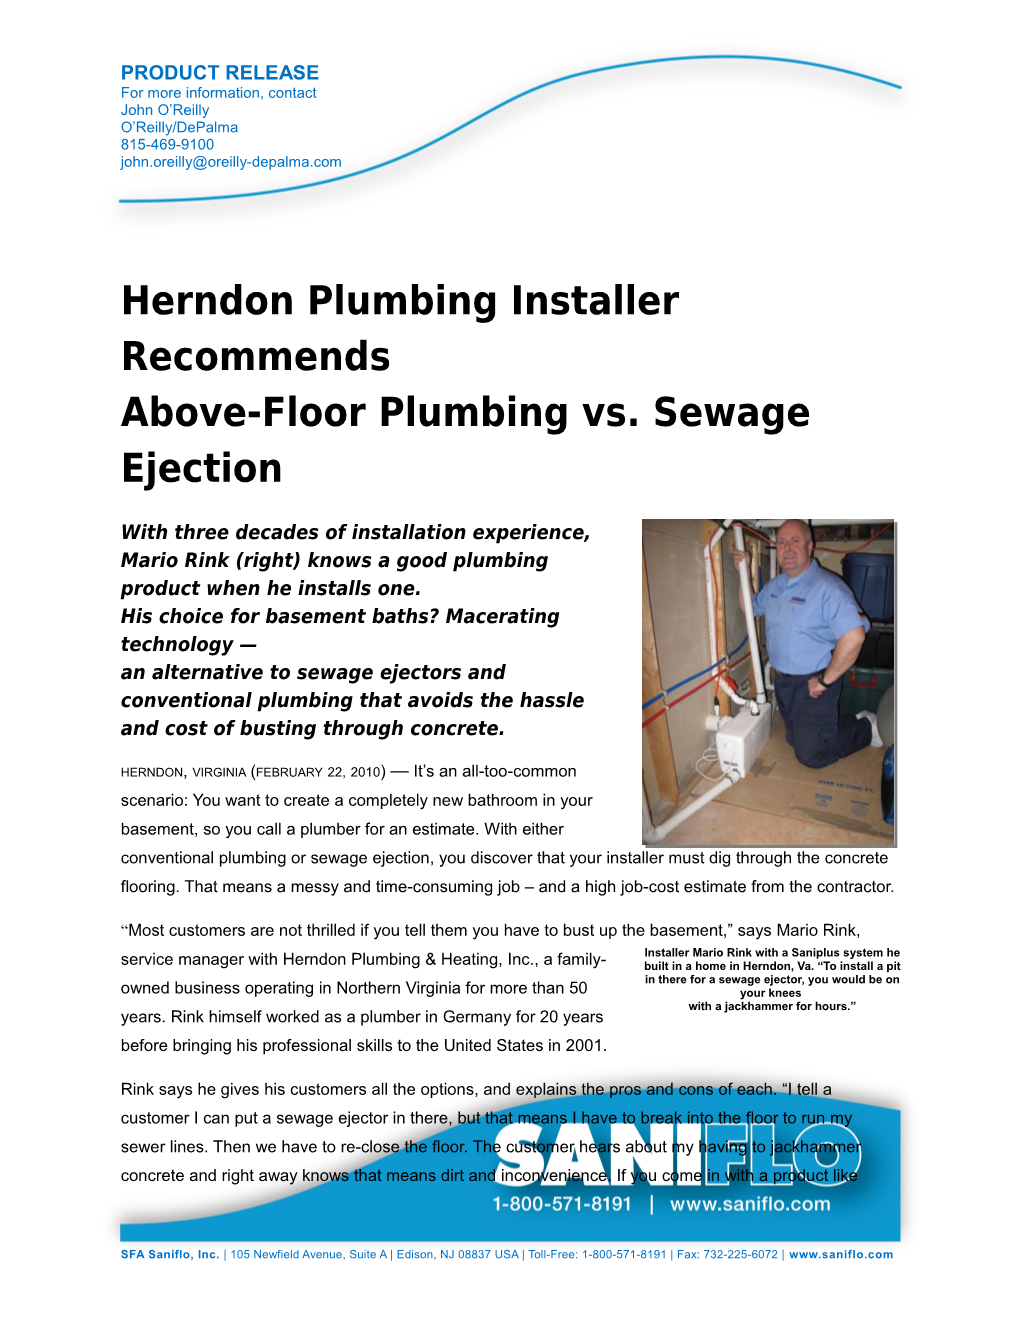 Herndon Plumbing Installer Recommends